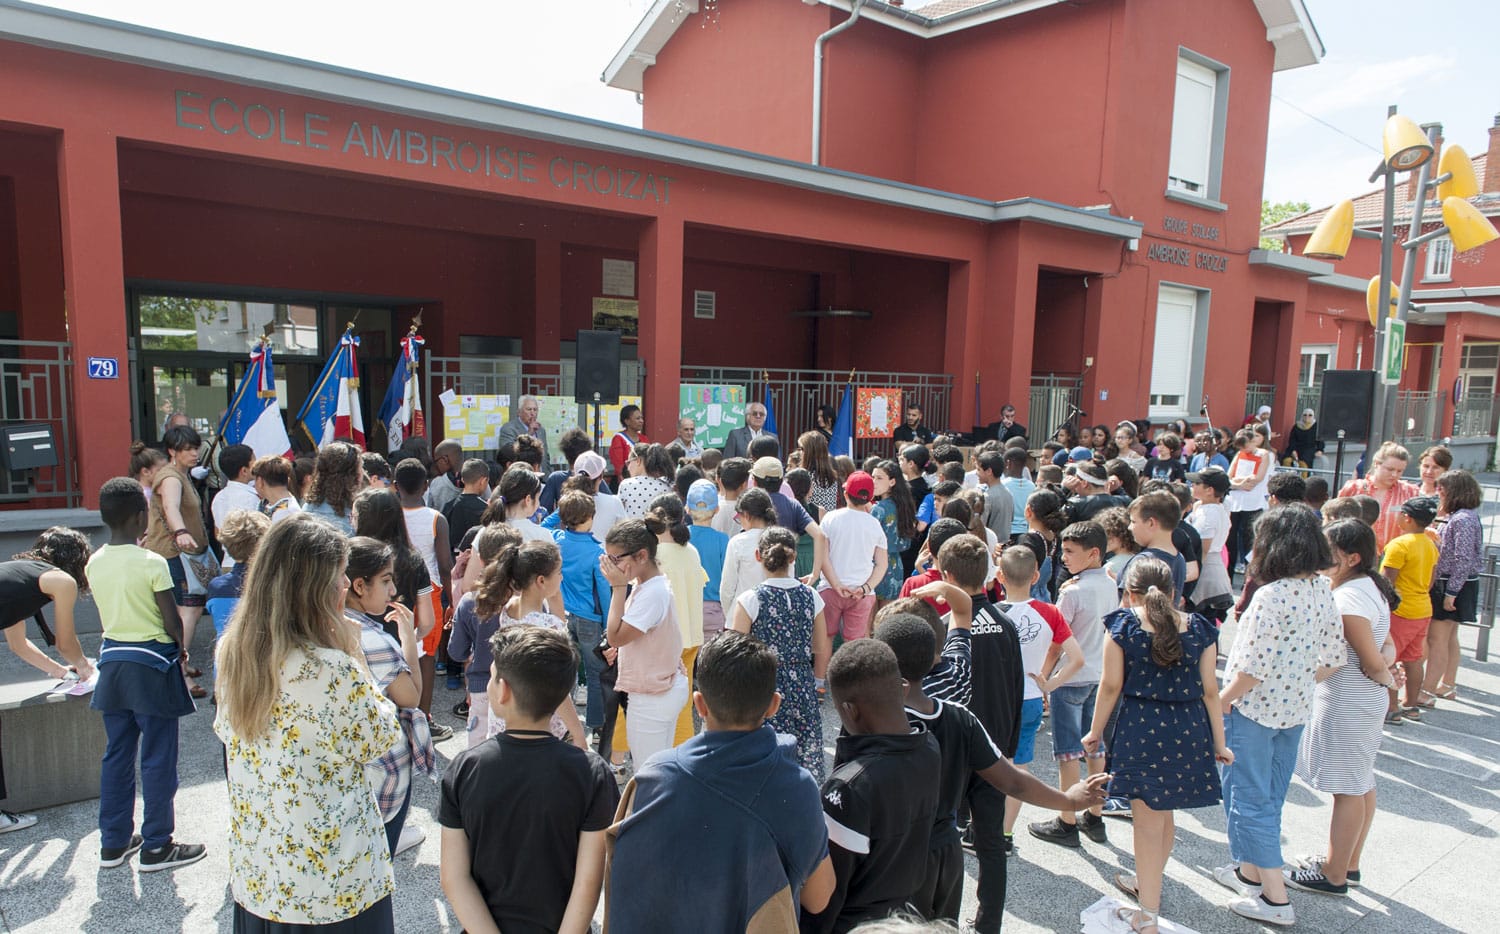 Cérémonie de l'appel du 18 juin a l’école Ambroise Croizat - 18 juin 2019 - Photo Thierry Chassepoux